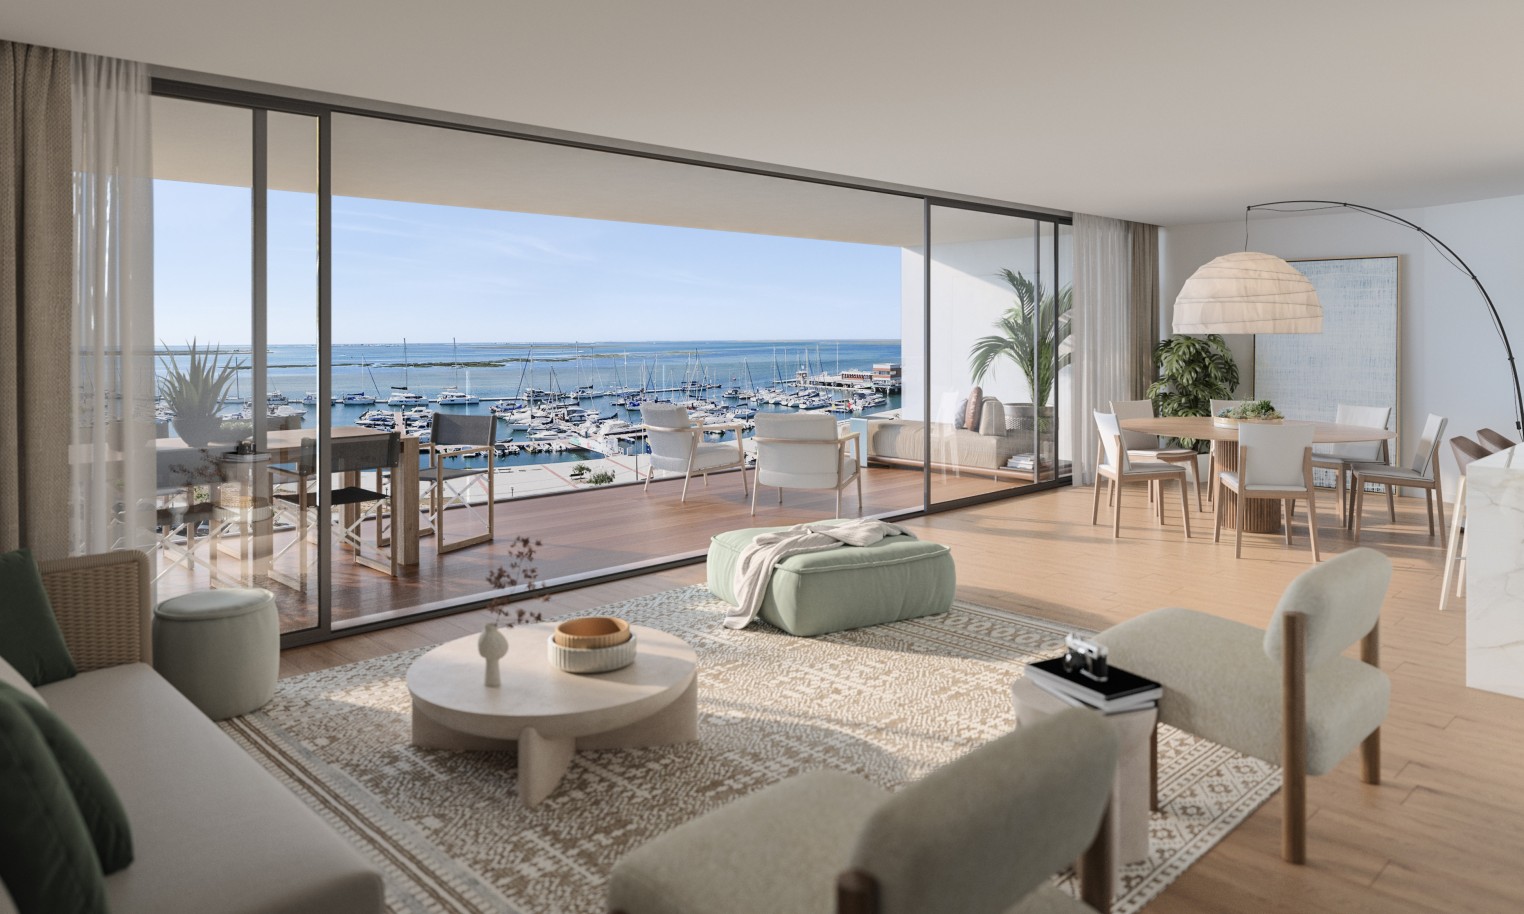 Pisos nuevos con vistas al mar, 1, 2 y 3 dormitorios, en venta en Olhão, Algarve_244013